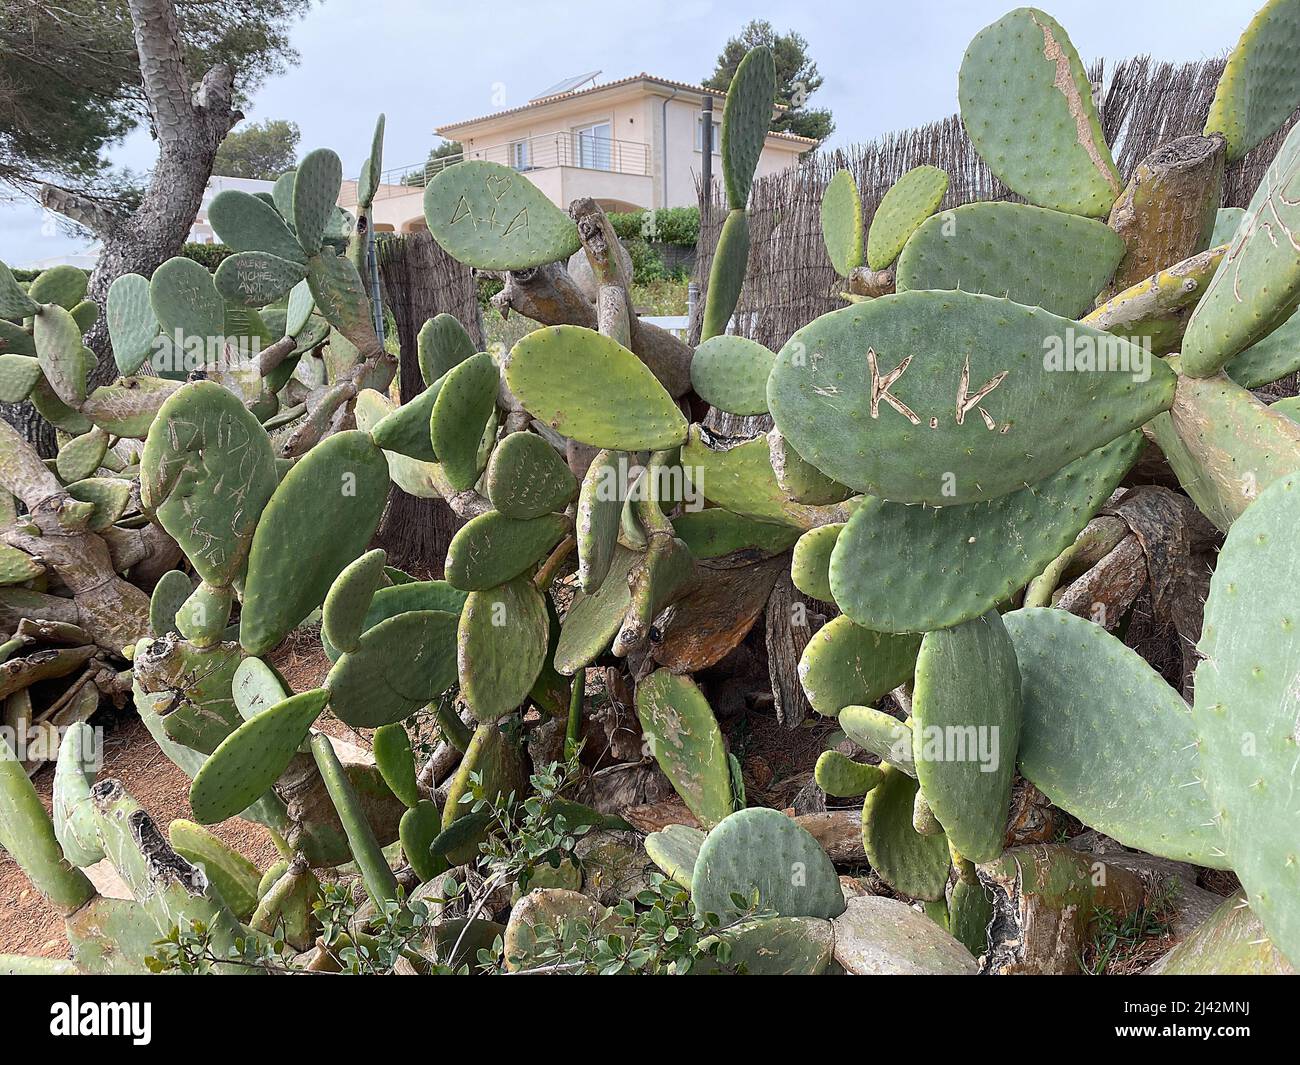 Cactus Opuntia in Spain, Monogram, Feigenkaktus Stock Photo